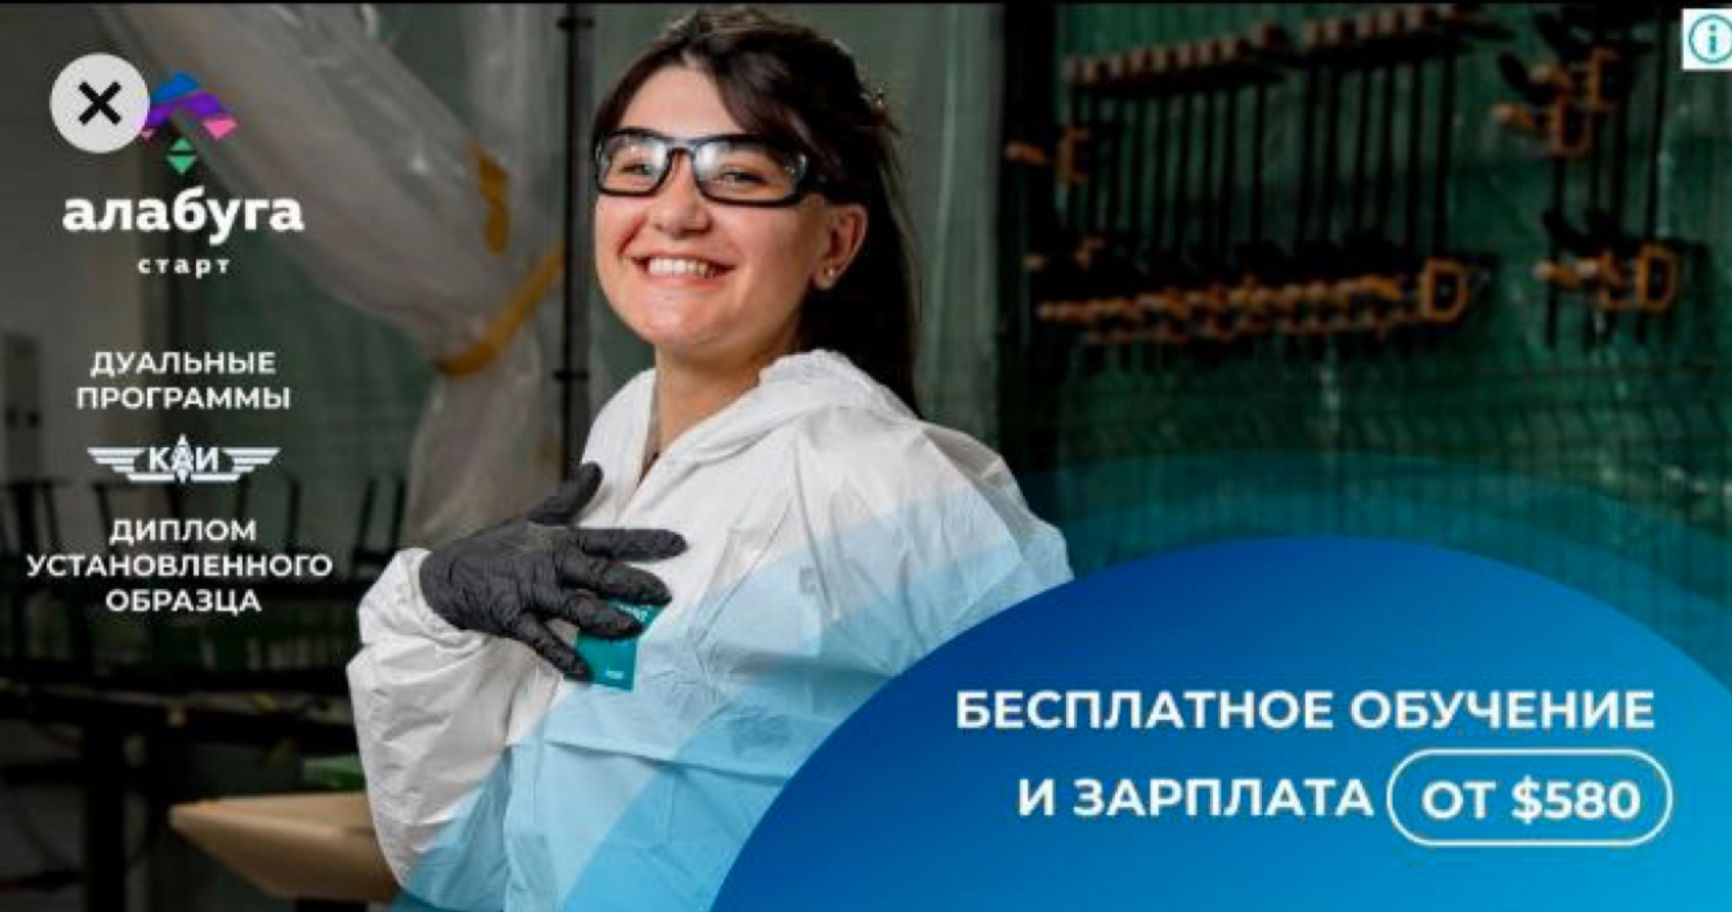 Рекламное объявление о приеме на работу на производство «Шахедов» в Татарстане